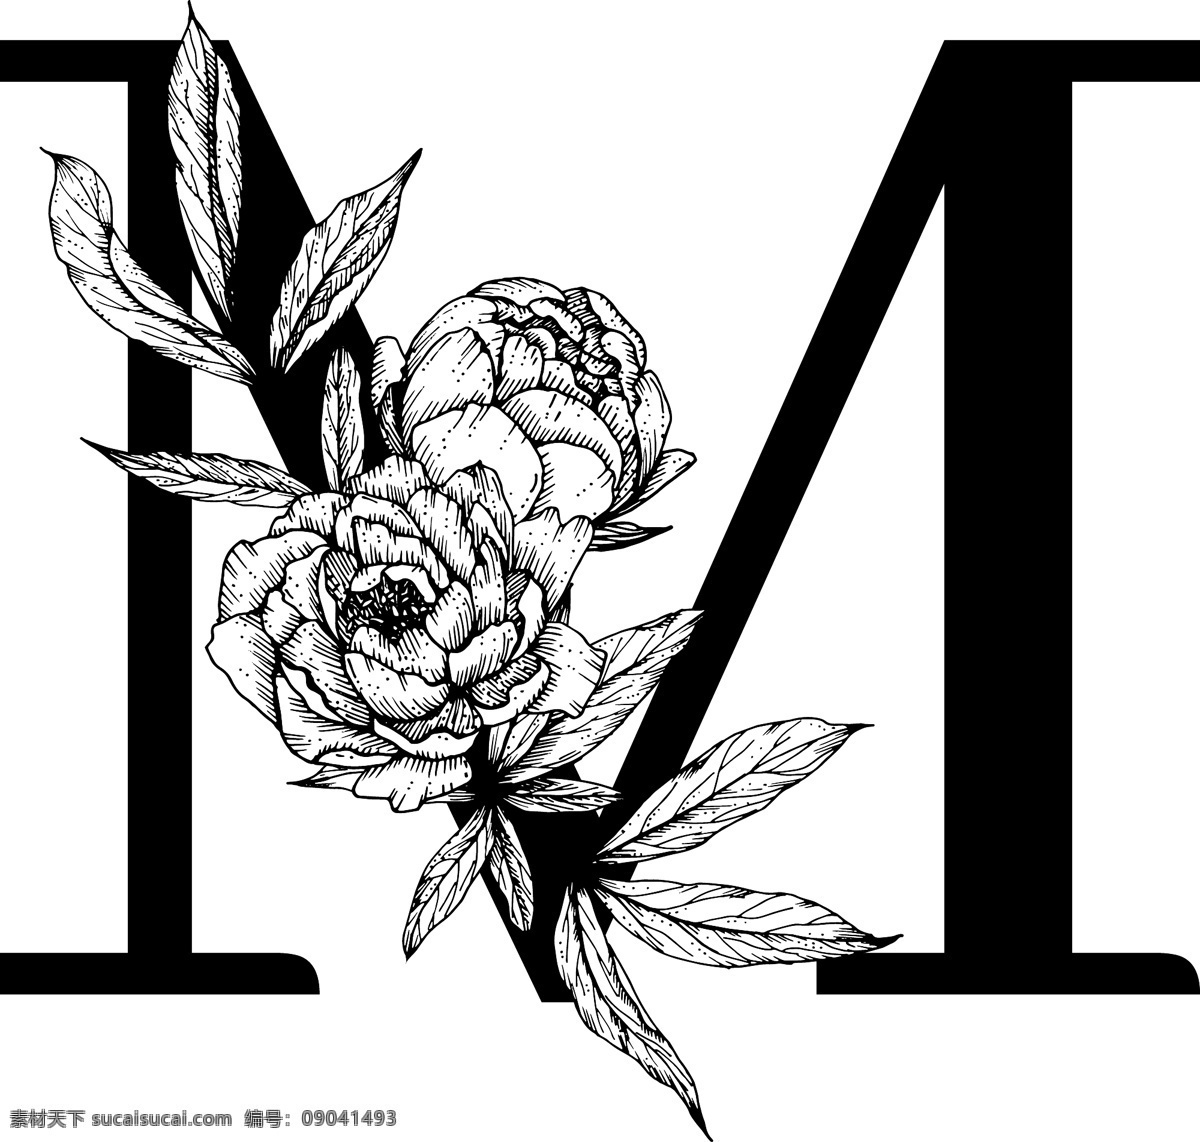 字母图片 花朵装饰字母 英文 字母 字体 花朵 鲜花 黑白 线描 素描 白描 创意设计 设计素材 矢量图 矢量素材 标识 生活百科 学习用品